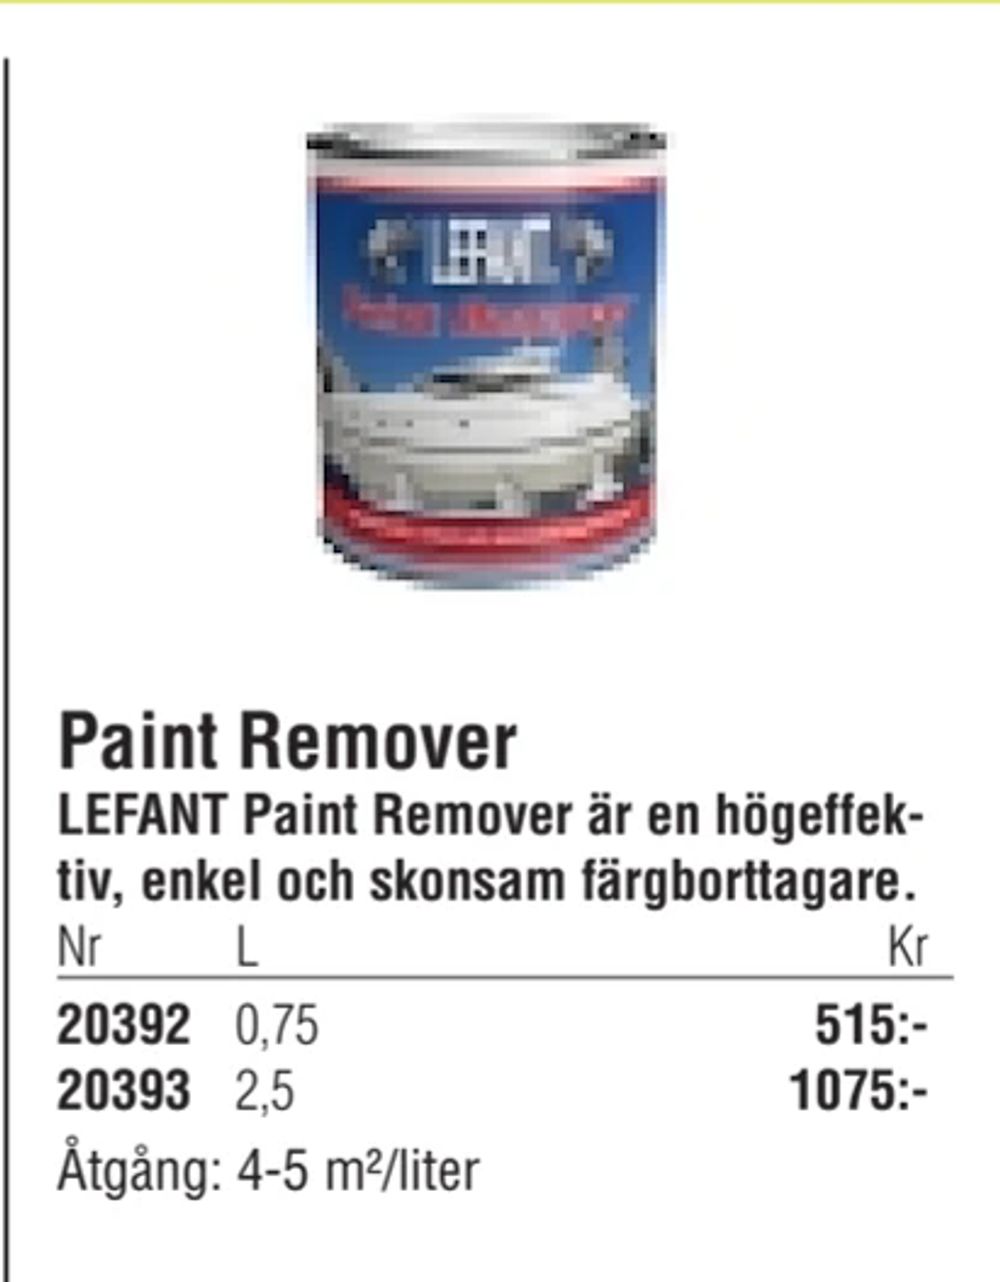 Erbjudanden på Paint Remover från Erlandsons Brygga för 515 kr